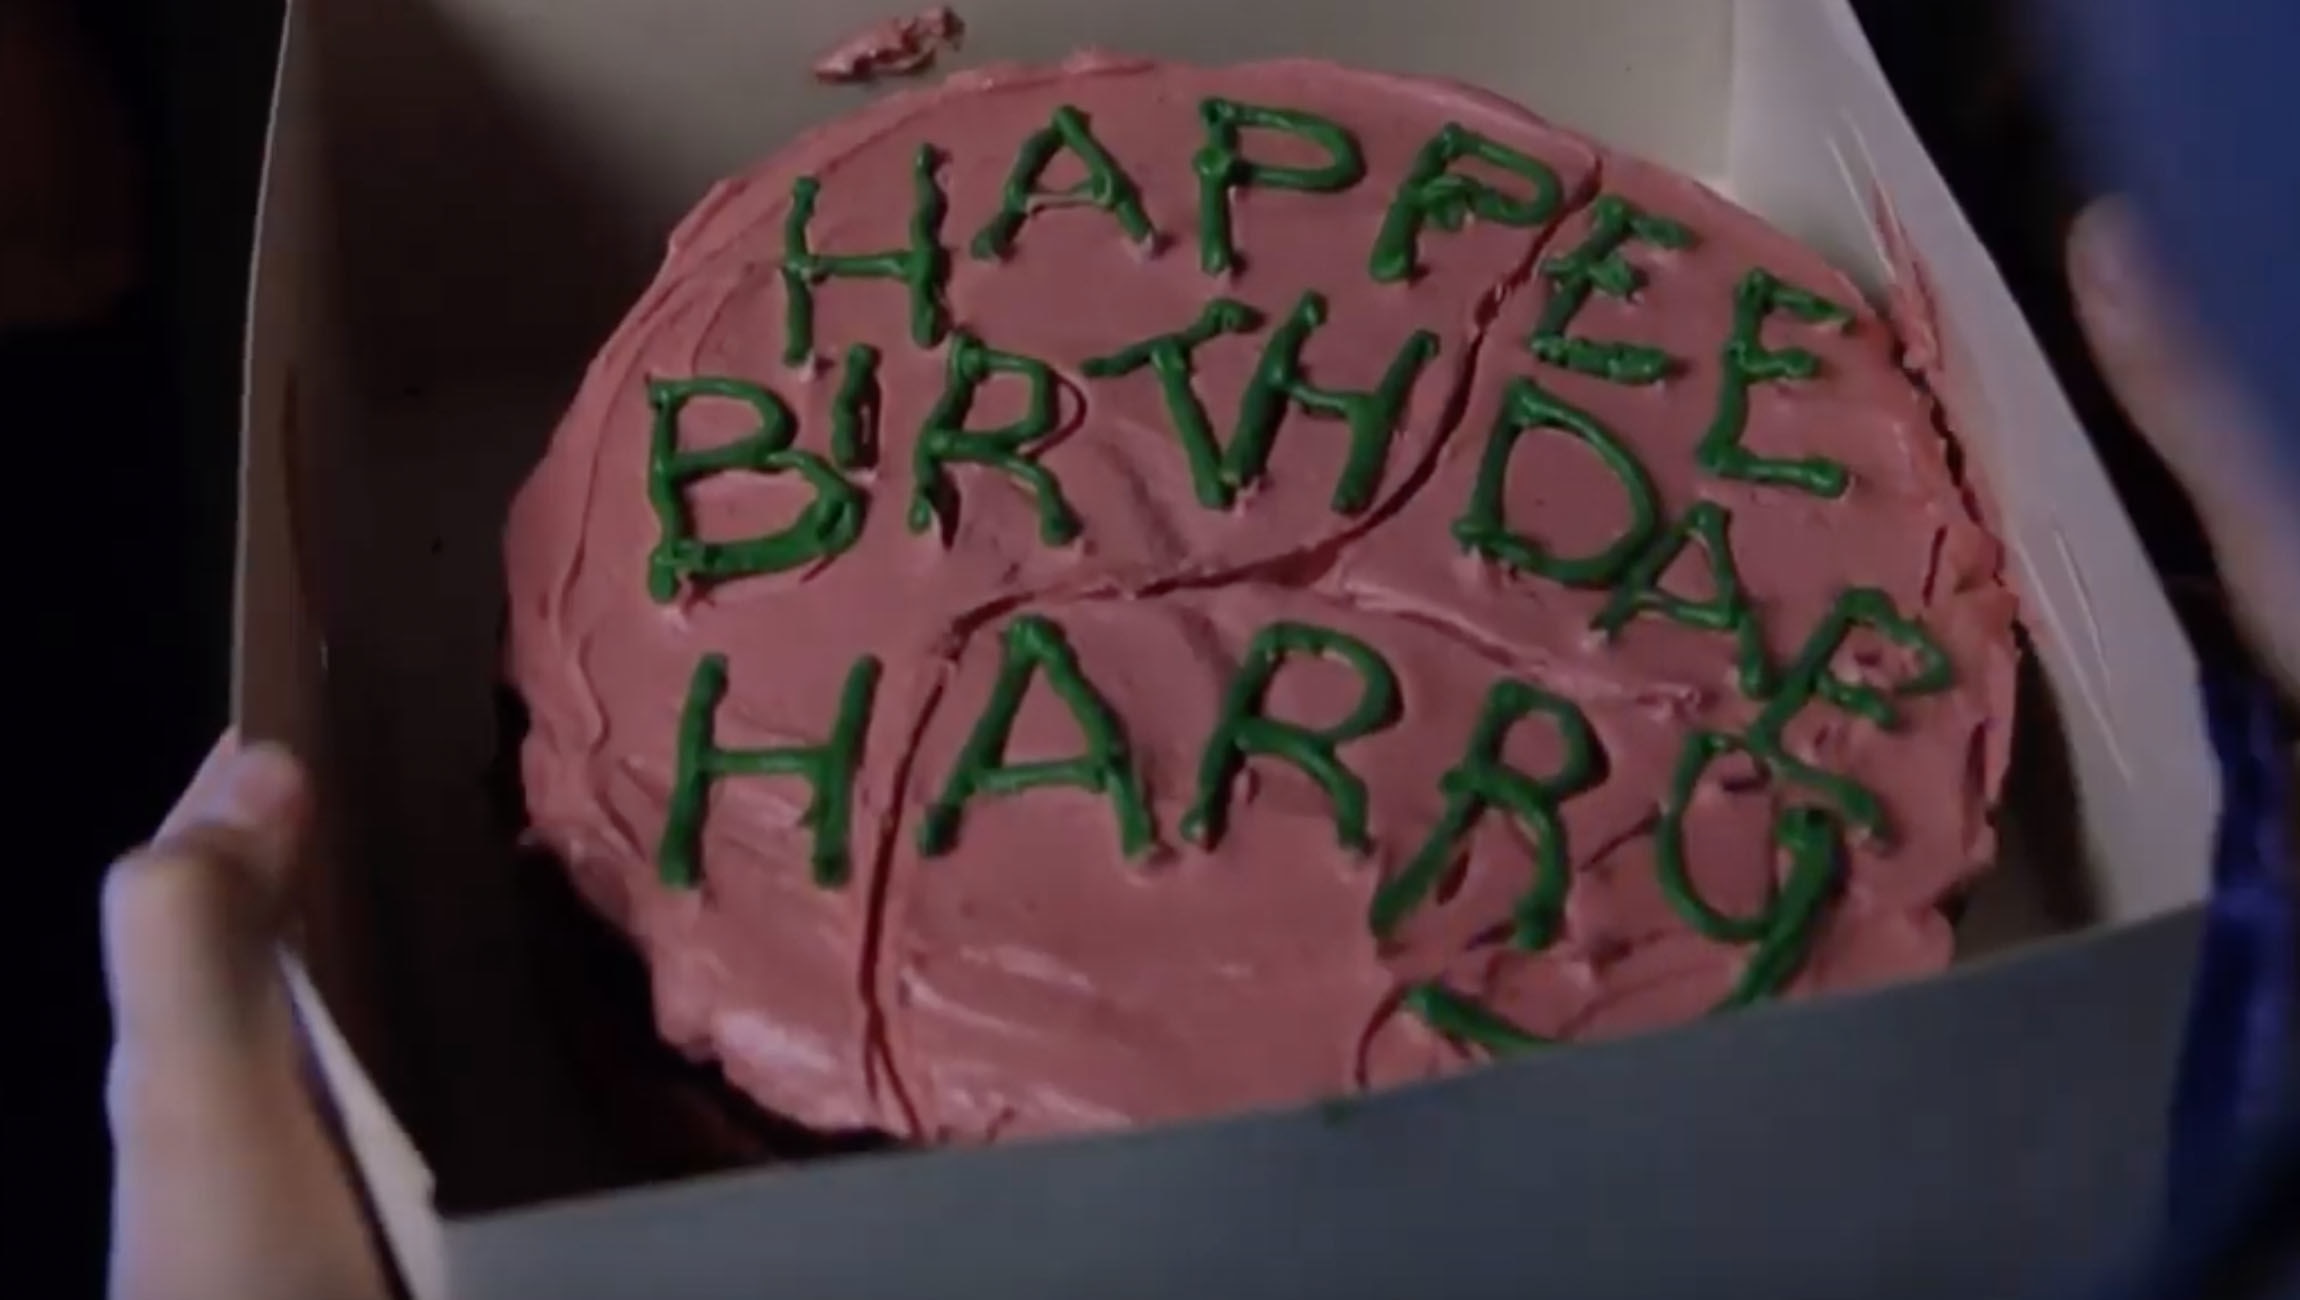 Happy birthday harry